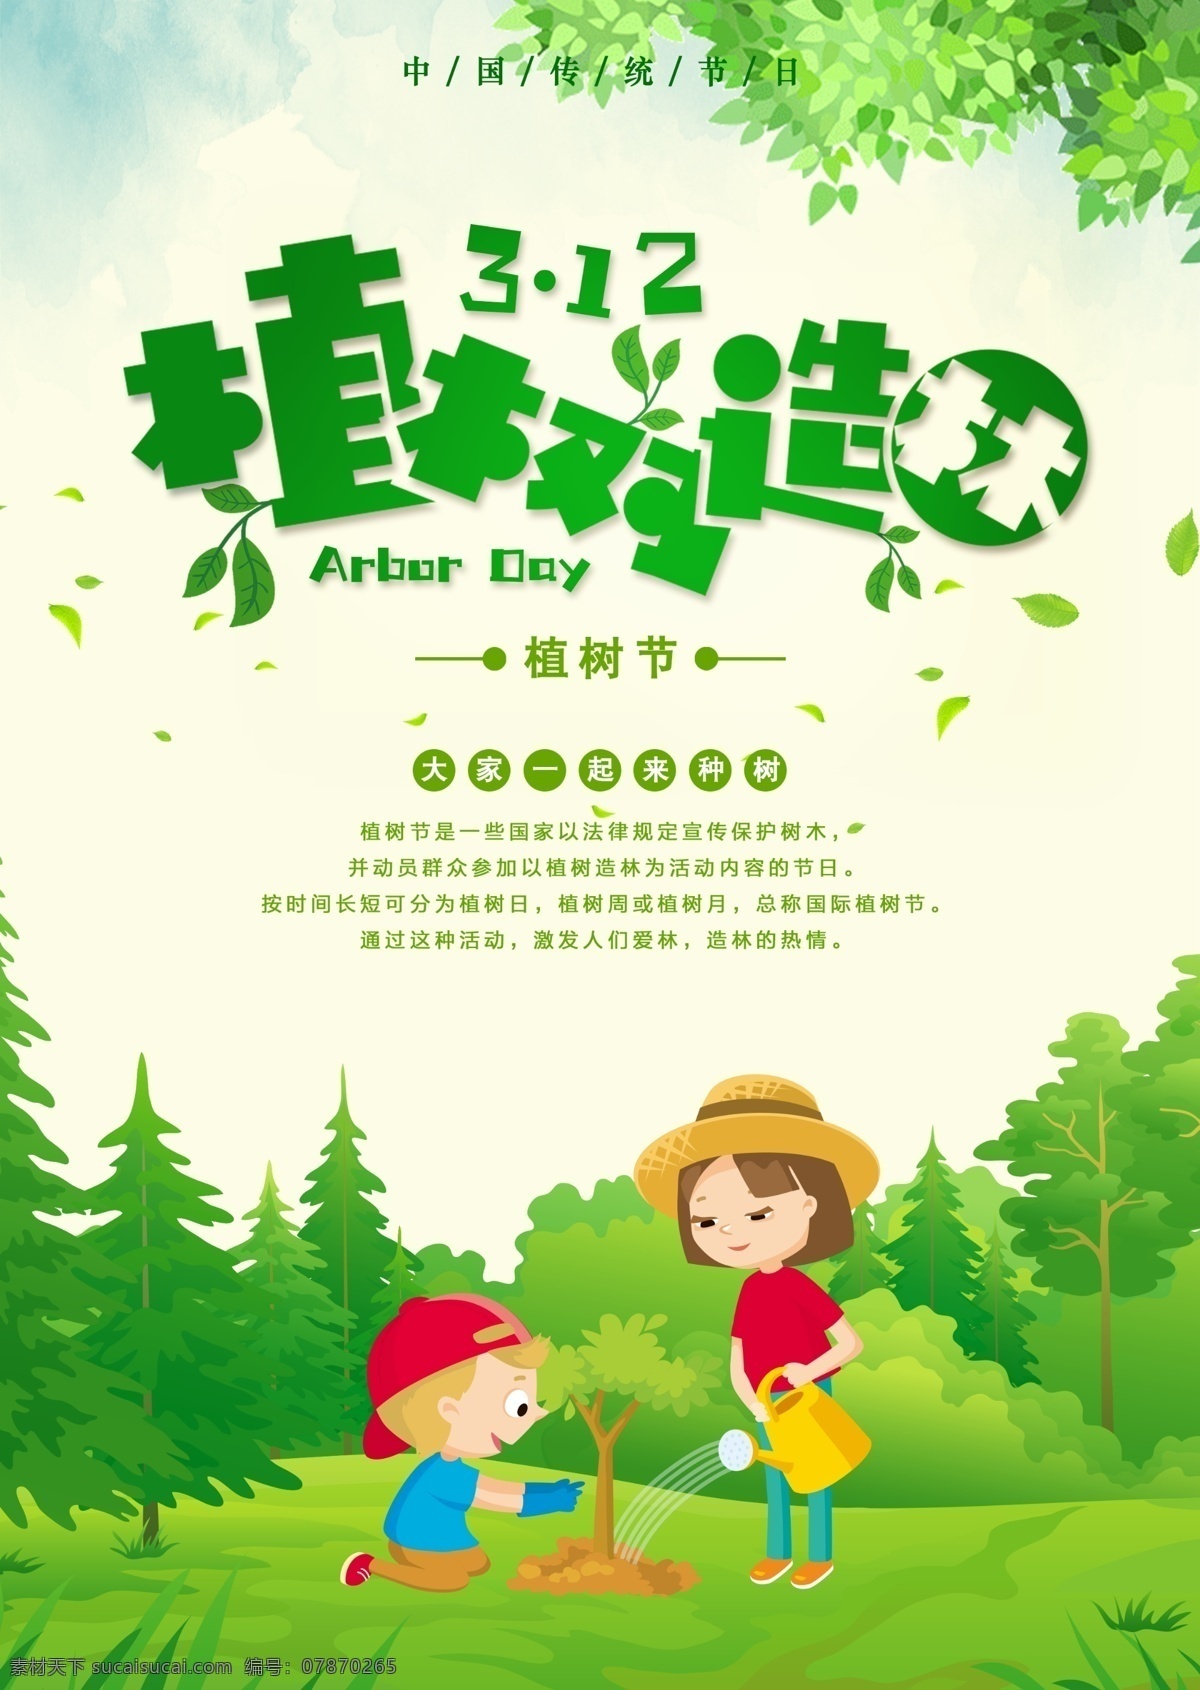 中国 传统节日 植树节 海报 高清图片素材 设计素材 模板设计 卡通 高清 设计图